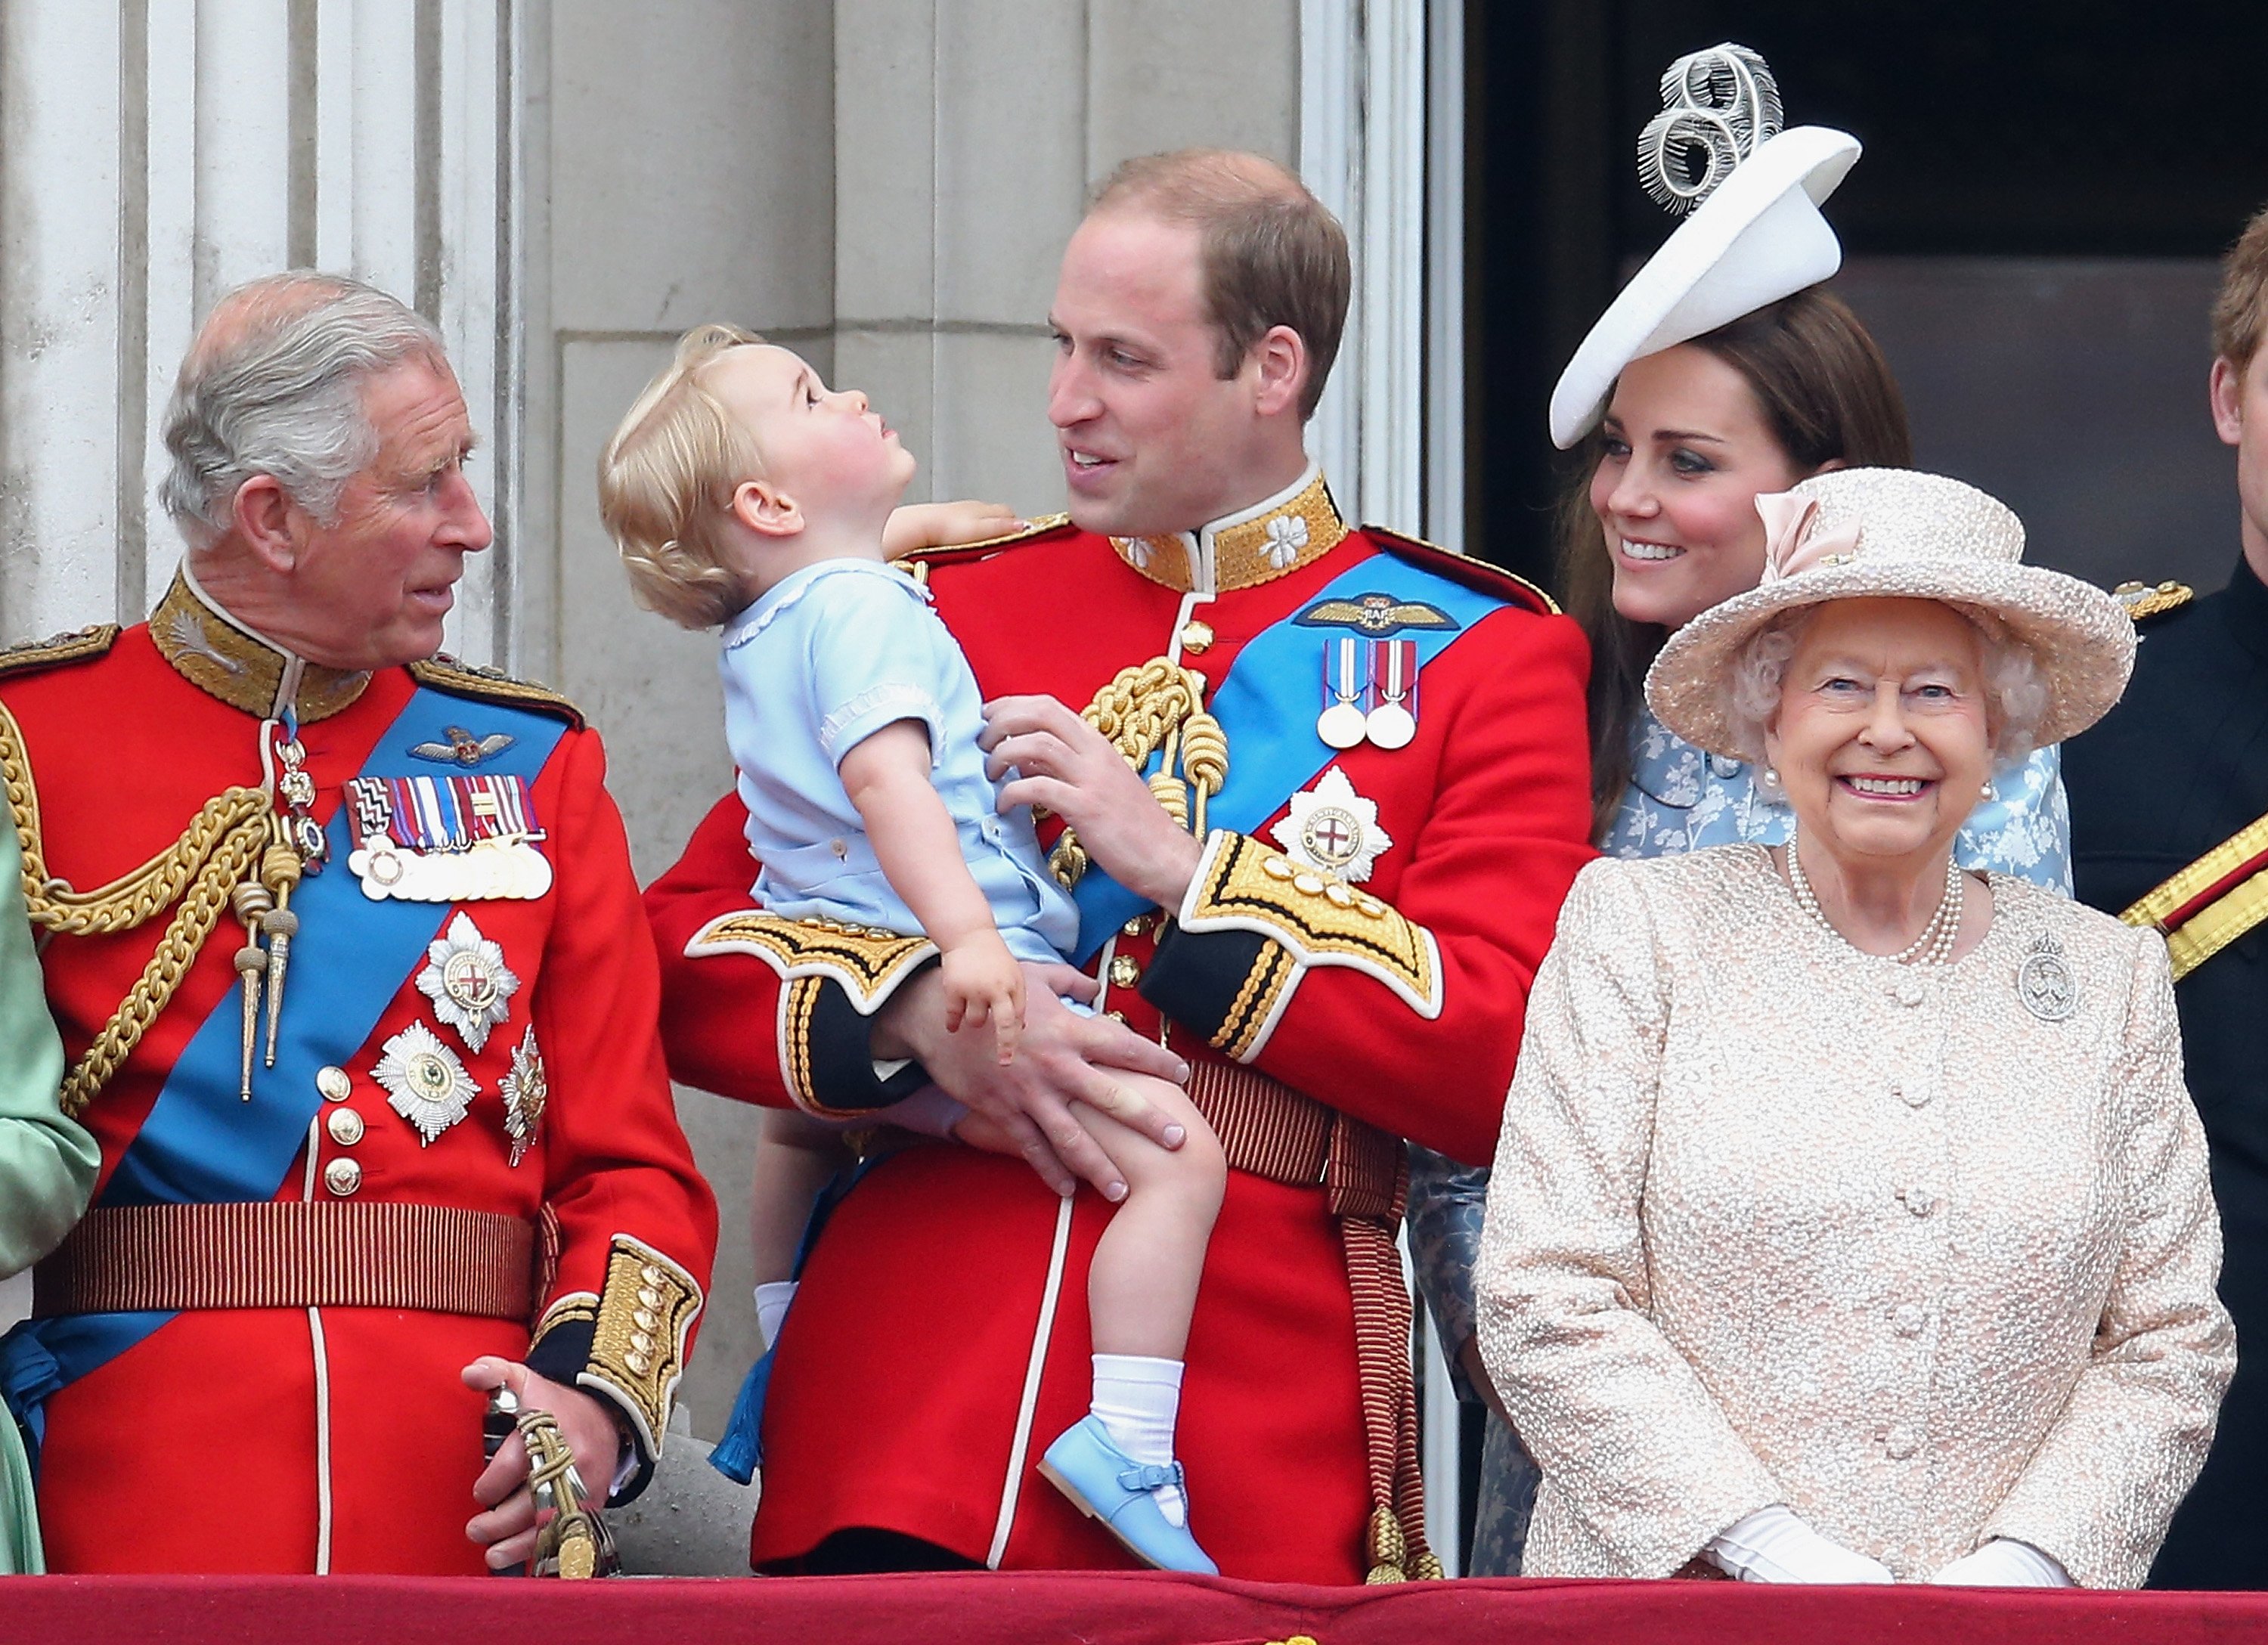 El príncipe George, el príncipe William, el rey Charles III, Kate Middleton y la reina Elizabeth II en el palacio de Buckingham, en 2015. | Foto: Getty Images